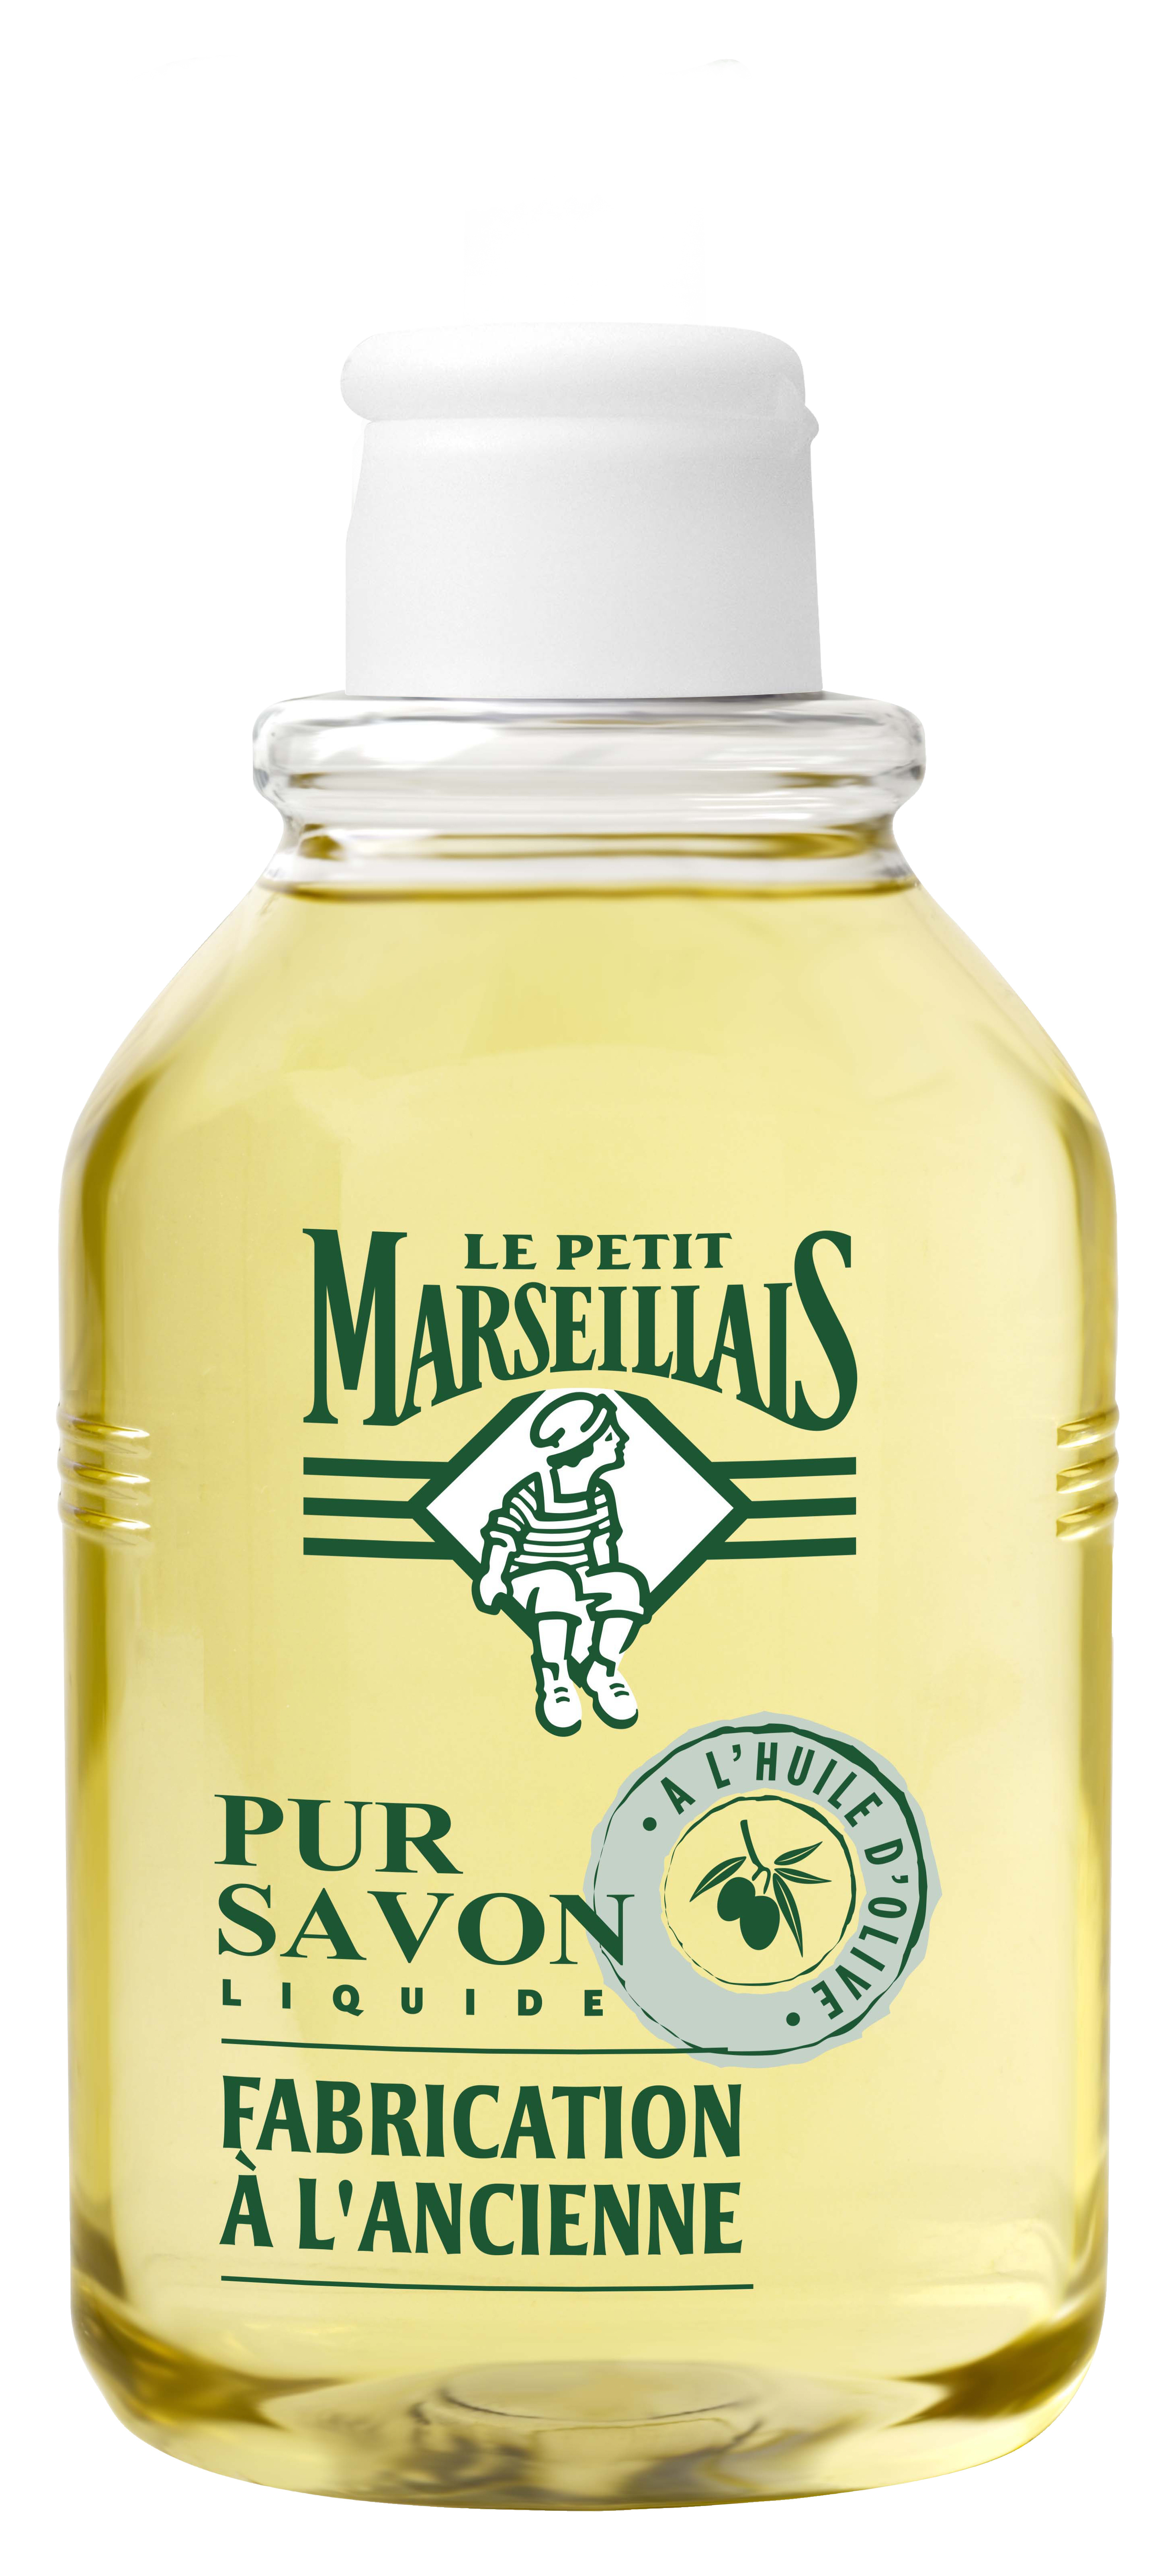 Le Petit Marseillais - Pompe savon olive